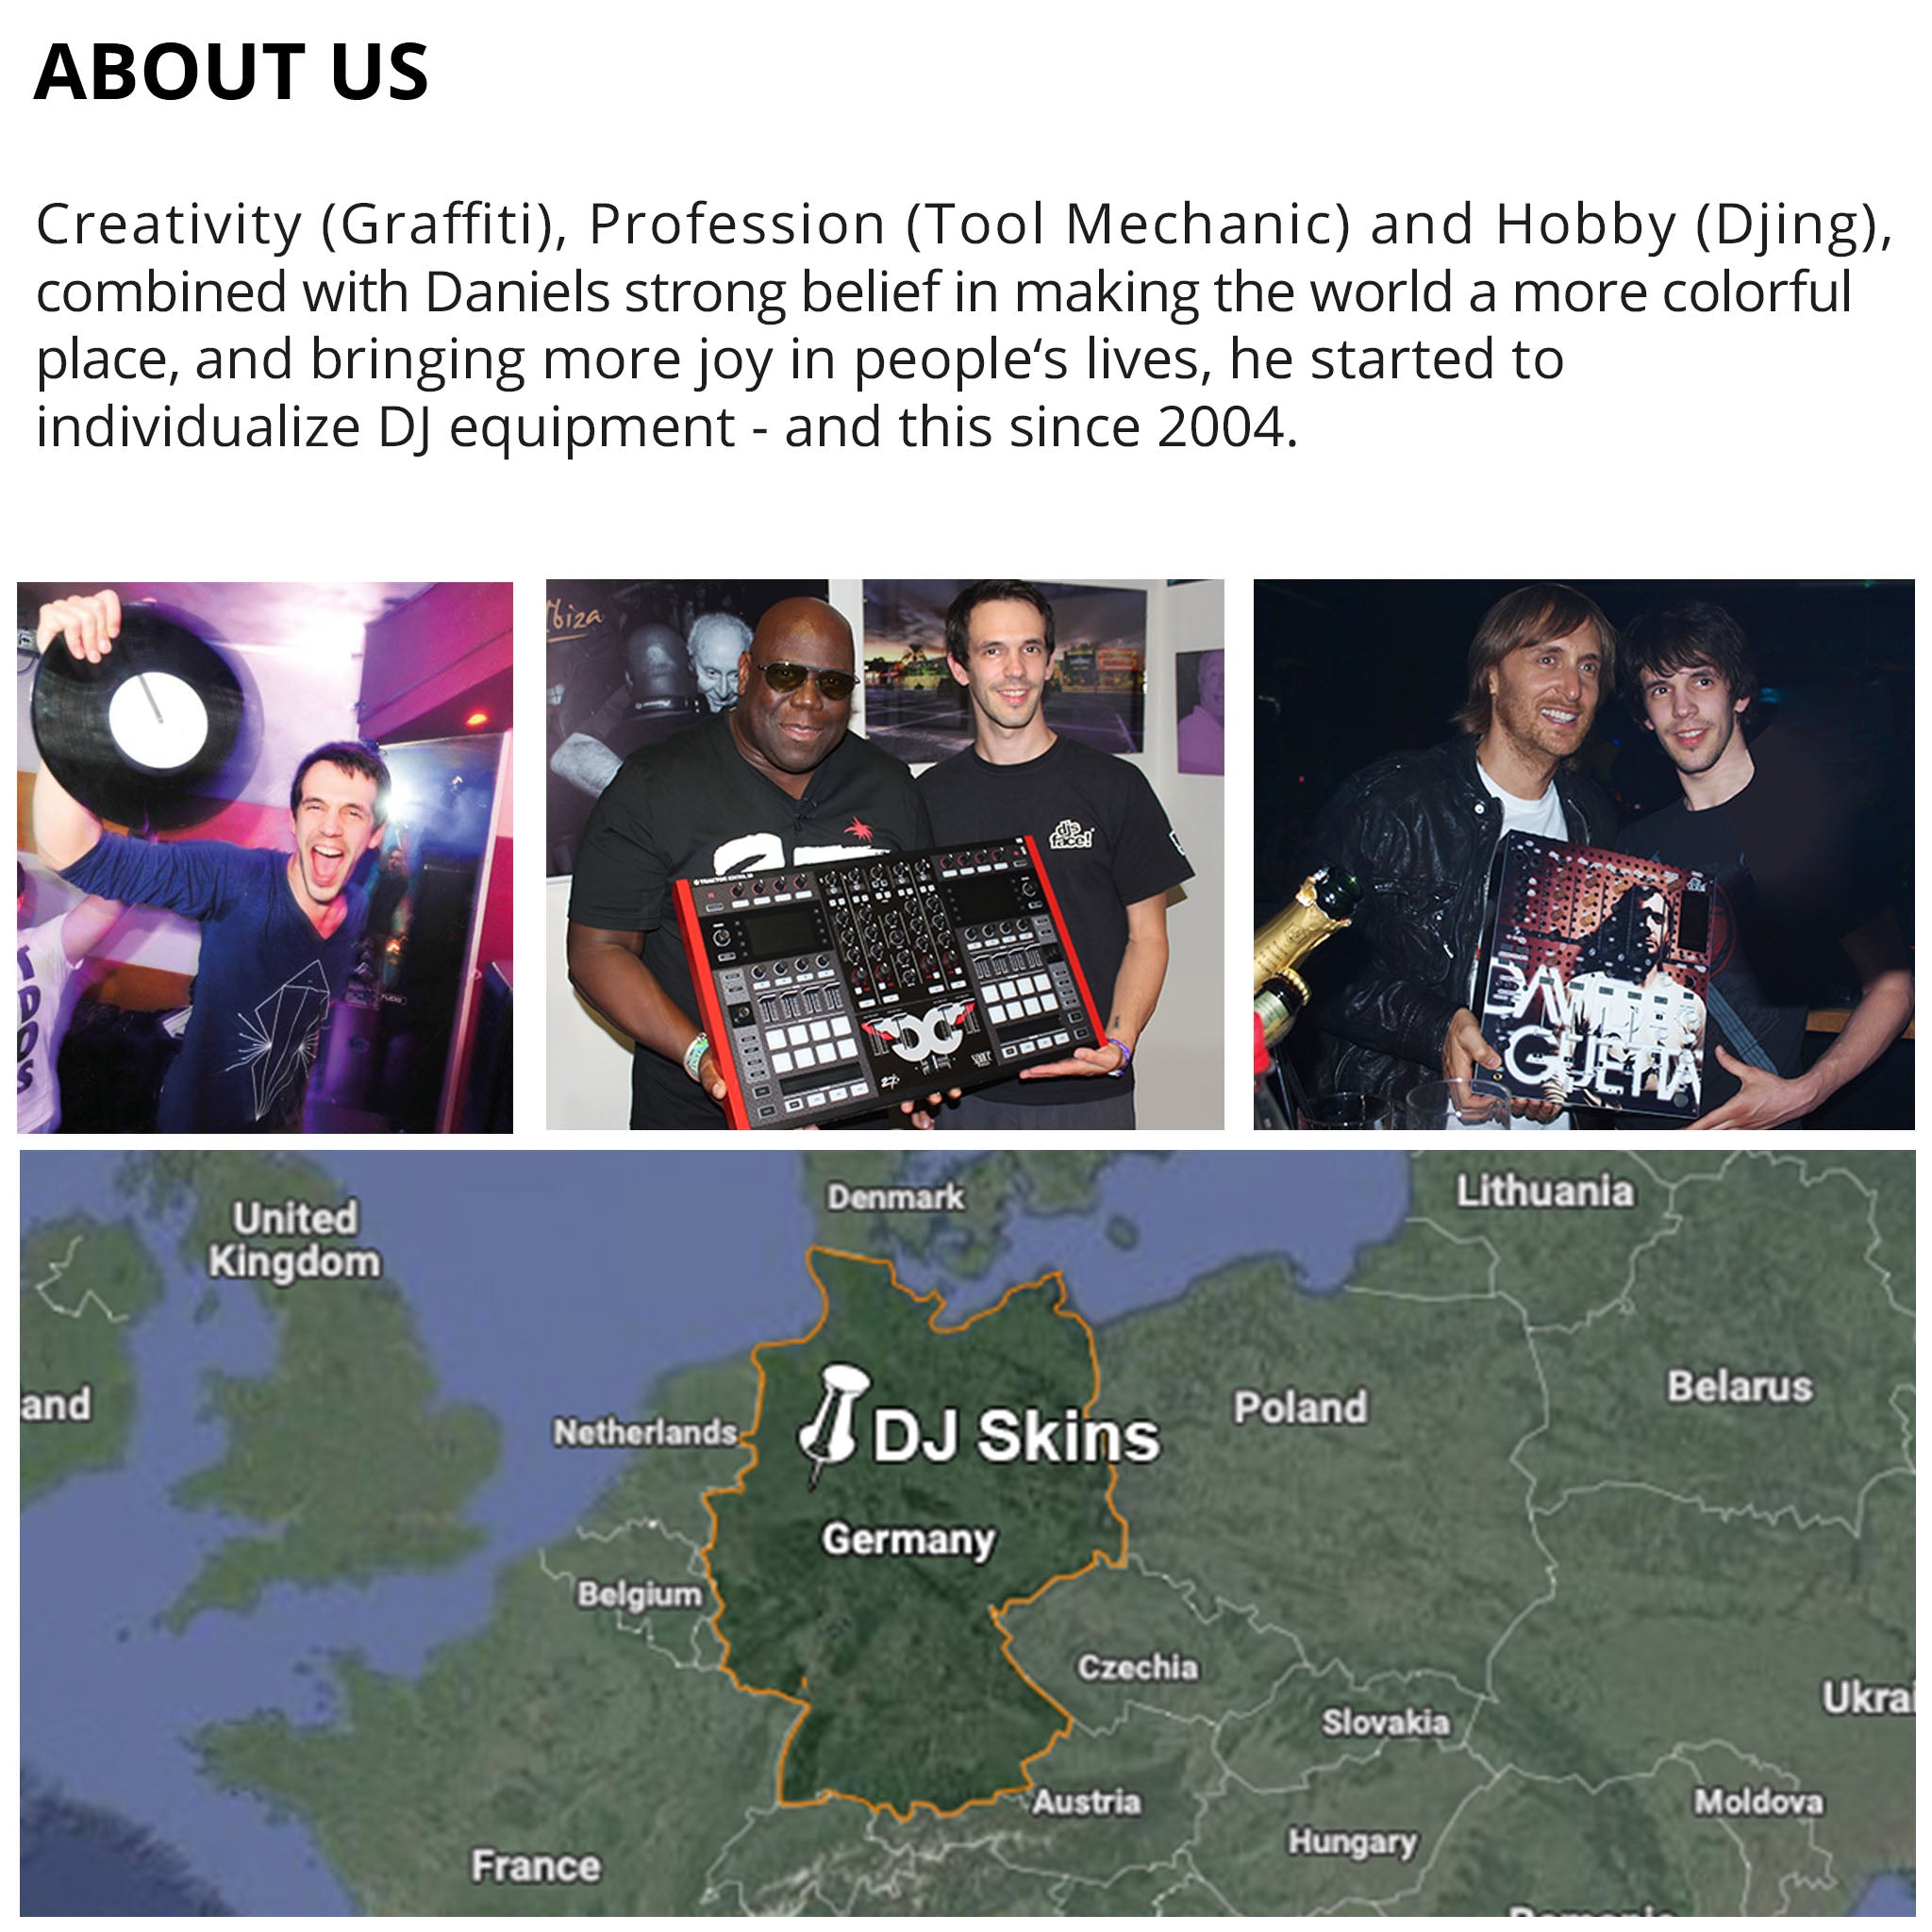 Pioneer DJ DDJ 1000 Skin Metallic Bermuda Blue